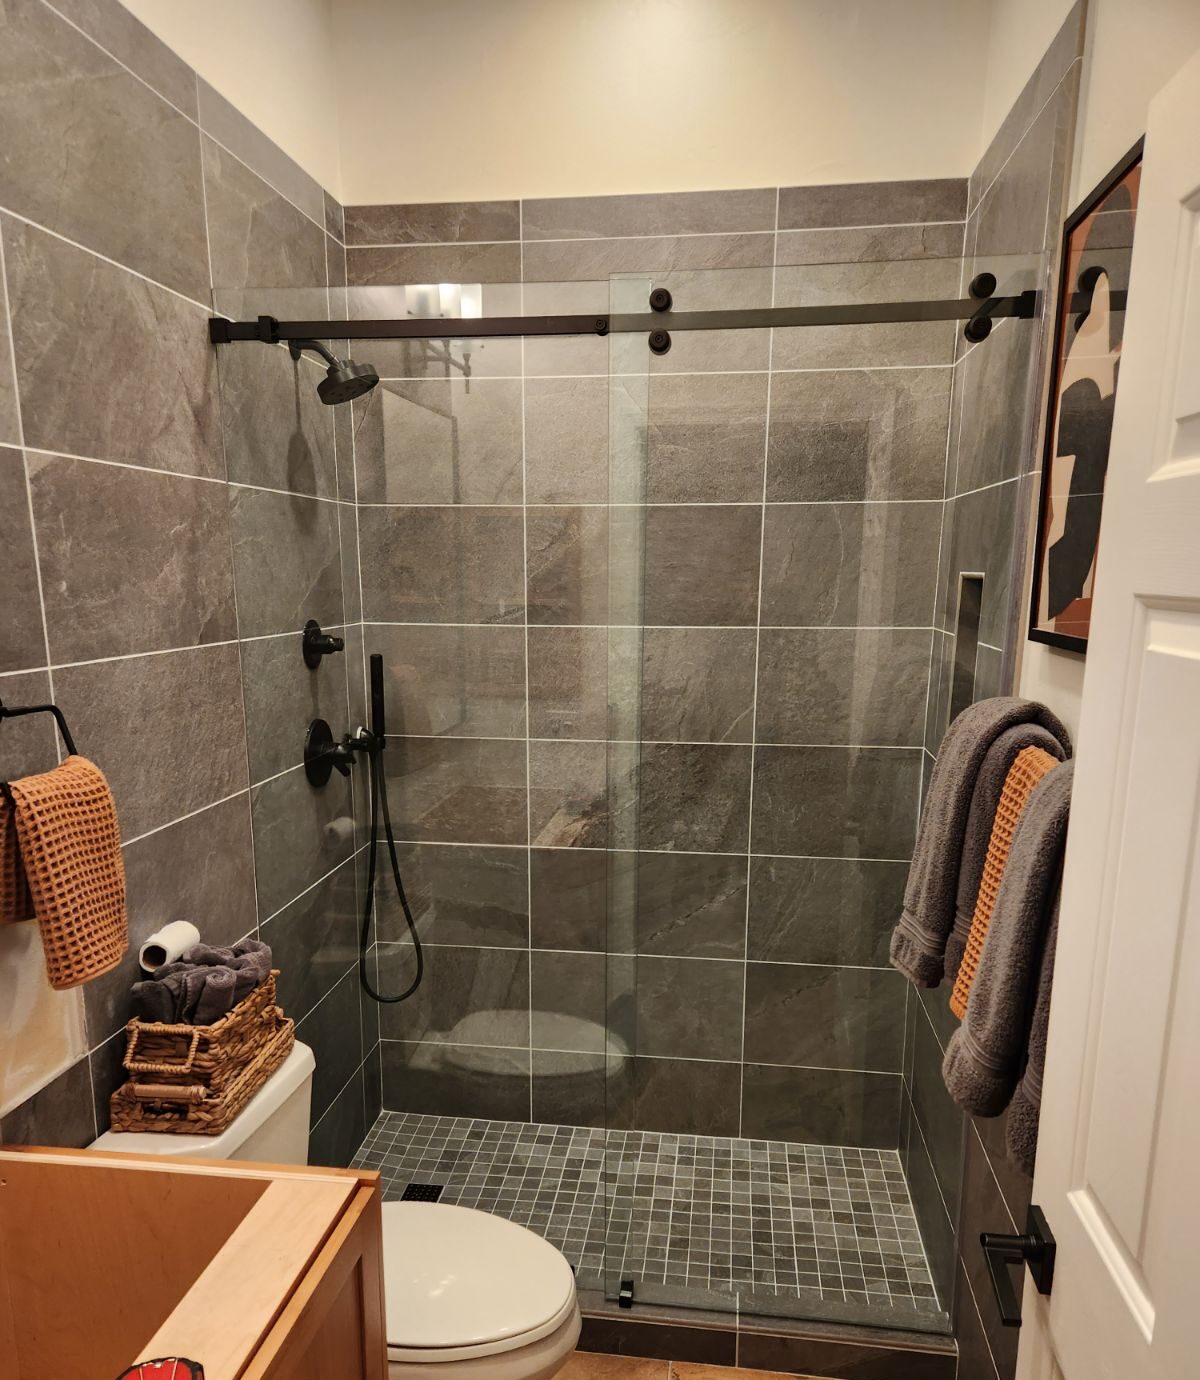 Open Enclose shower door installation in upgraded bathroom